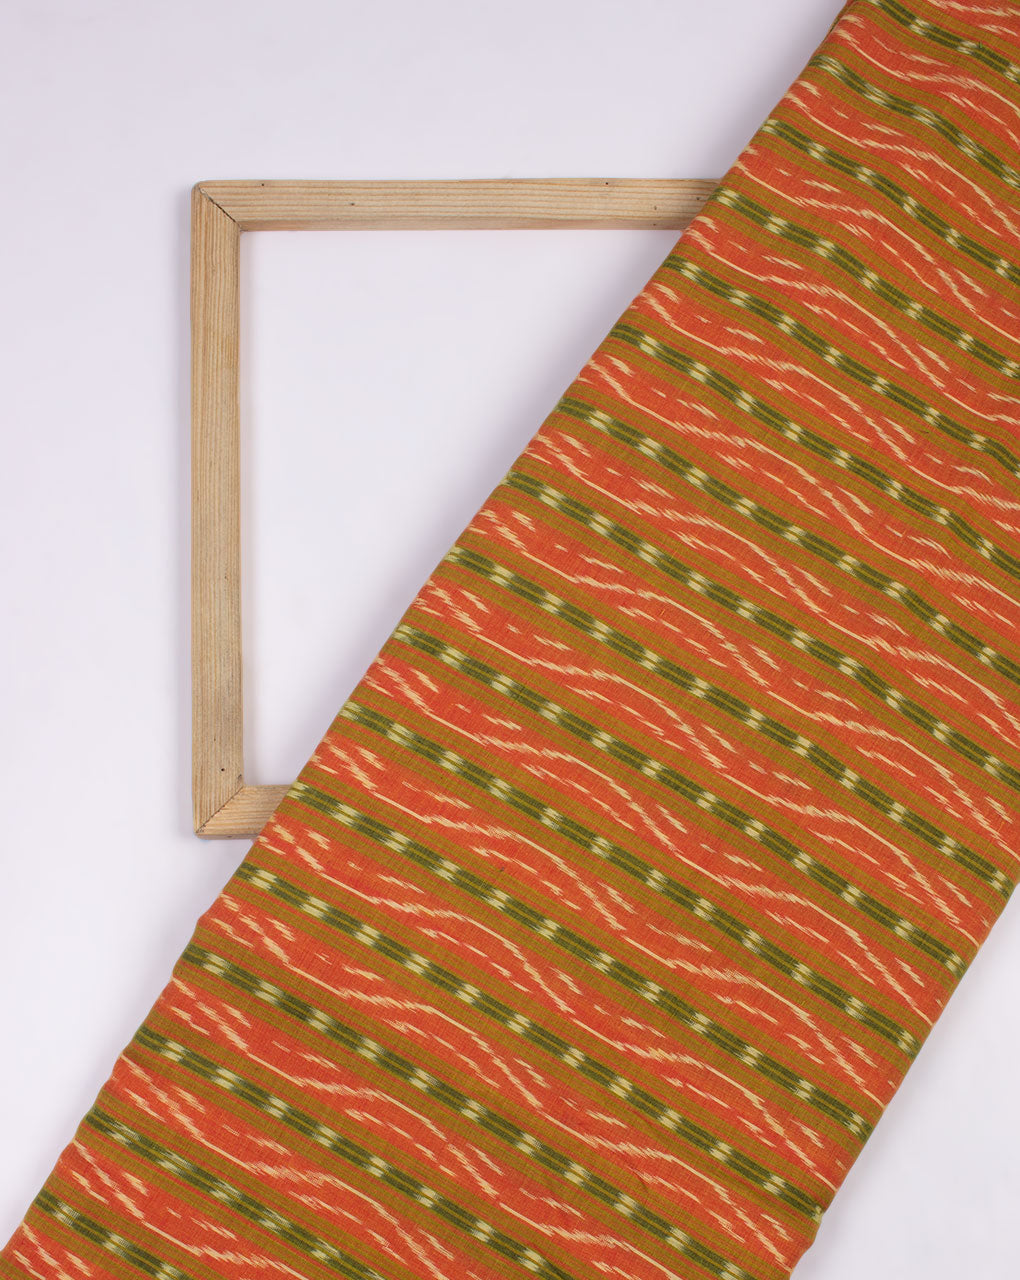 Yellow Green Stripes Pattern Woven Mercerized Ikat Cotton Fabric - Fabriclore.com